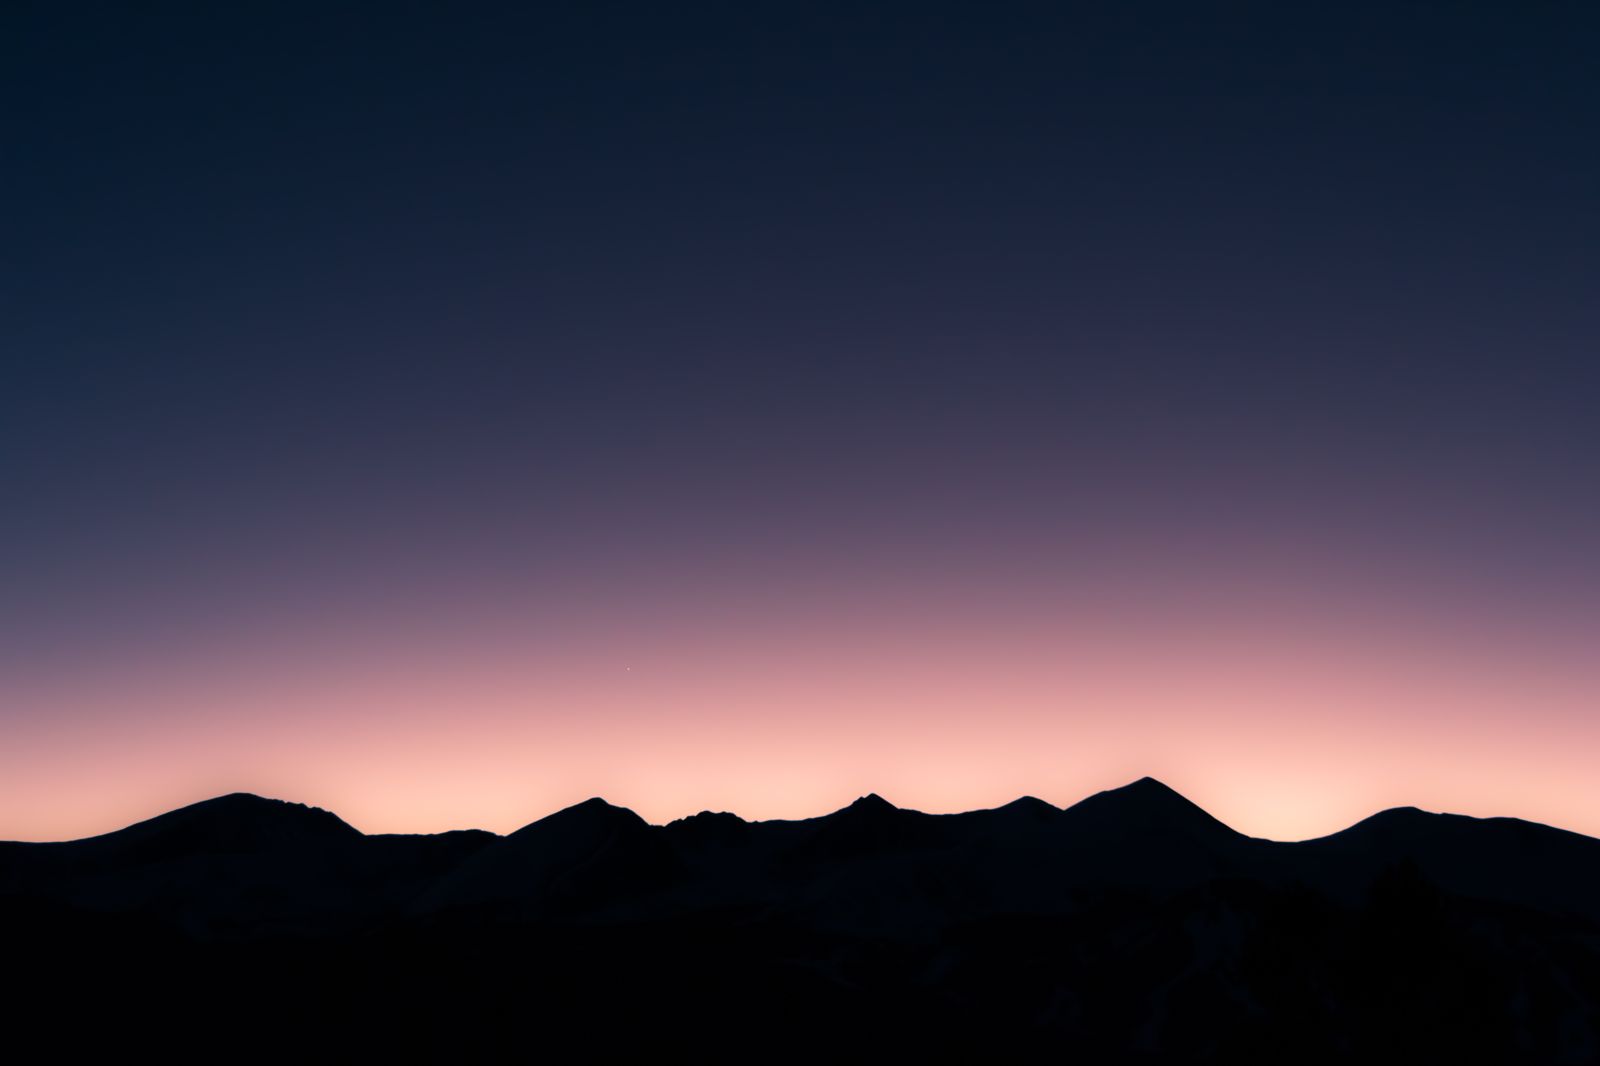 Sunset Mountain Dusk Silhouette Scenery Wallpaper - Mountain Range Sunset - HD Wallpaper 